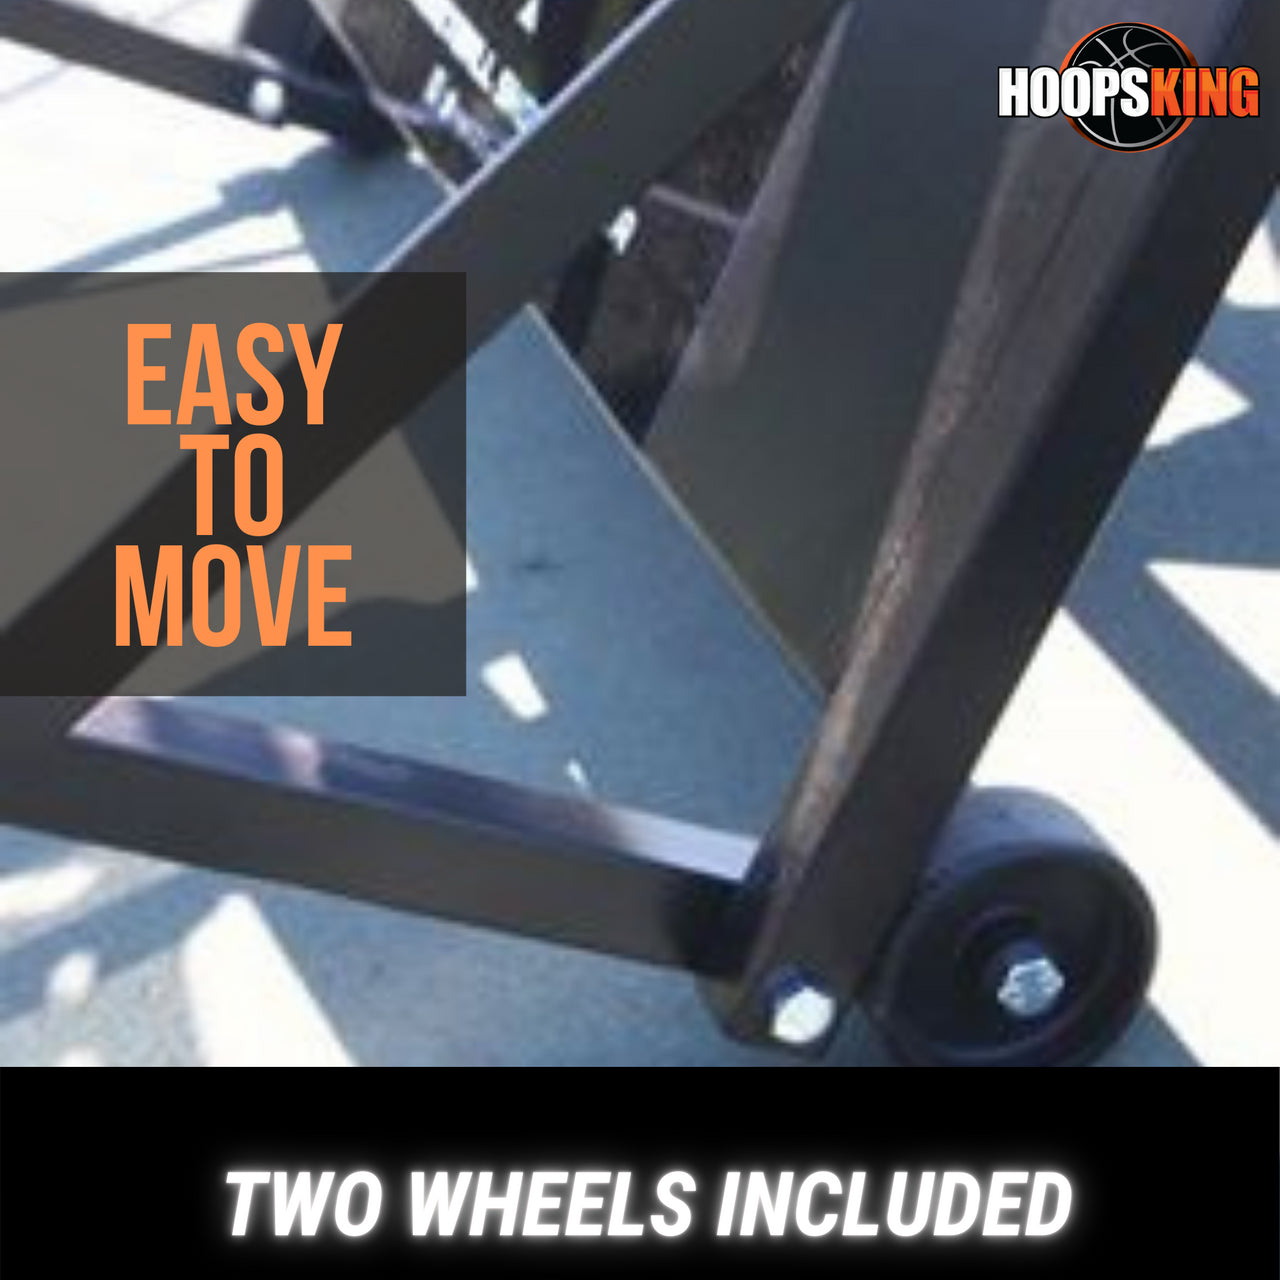 Wheel Kit for the iC3 Basketball Shot Rebounder